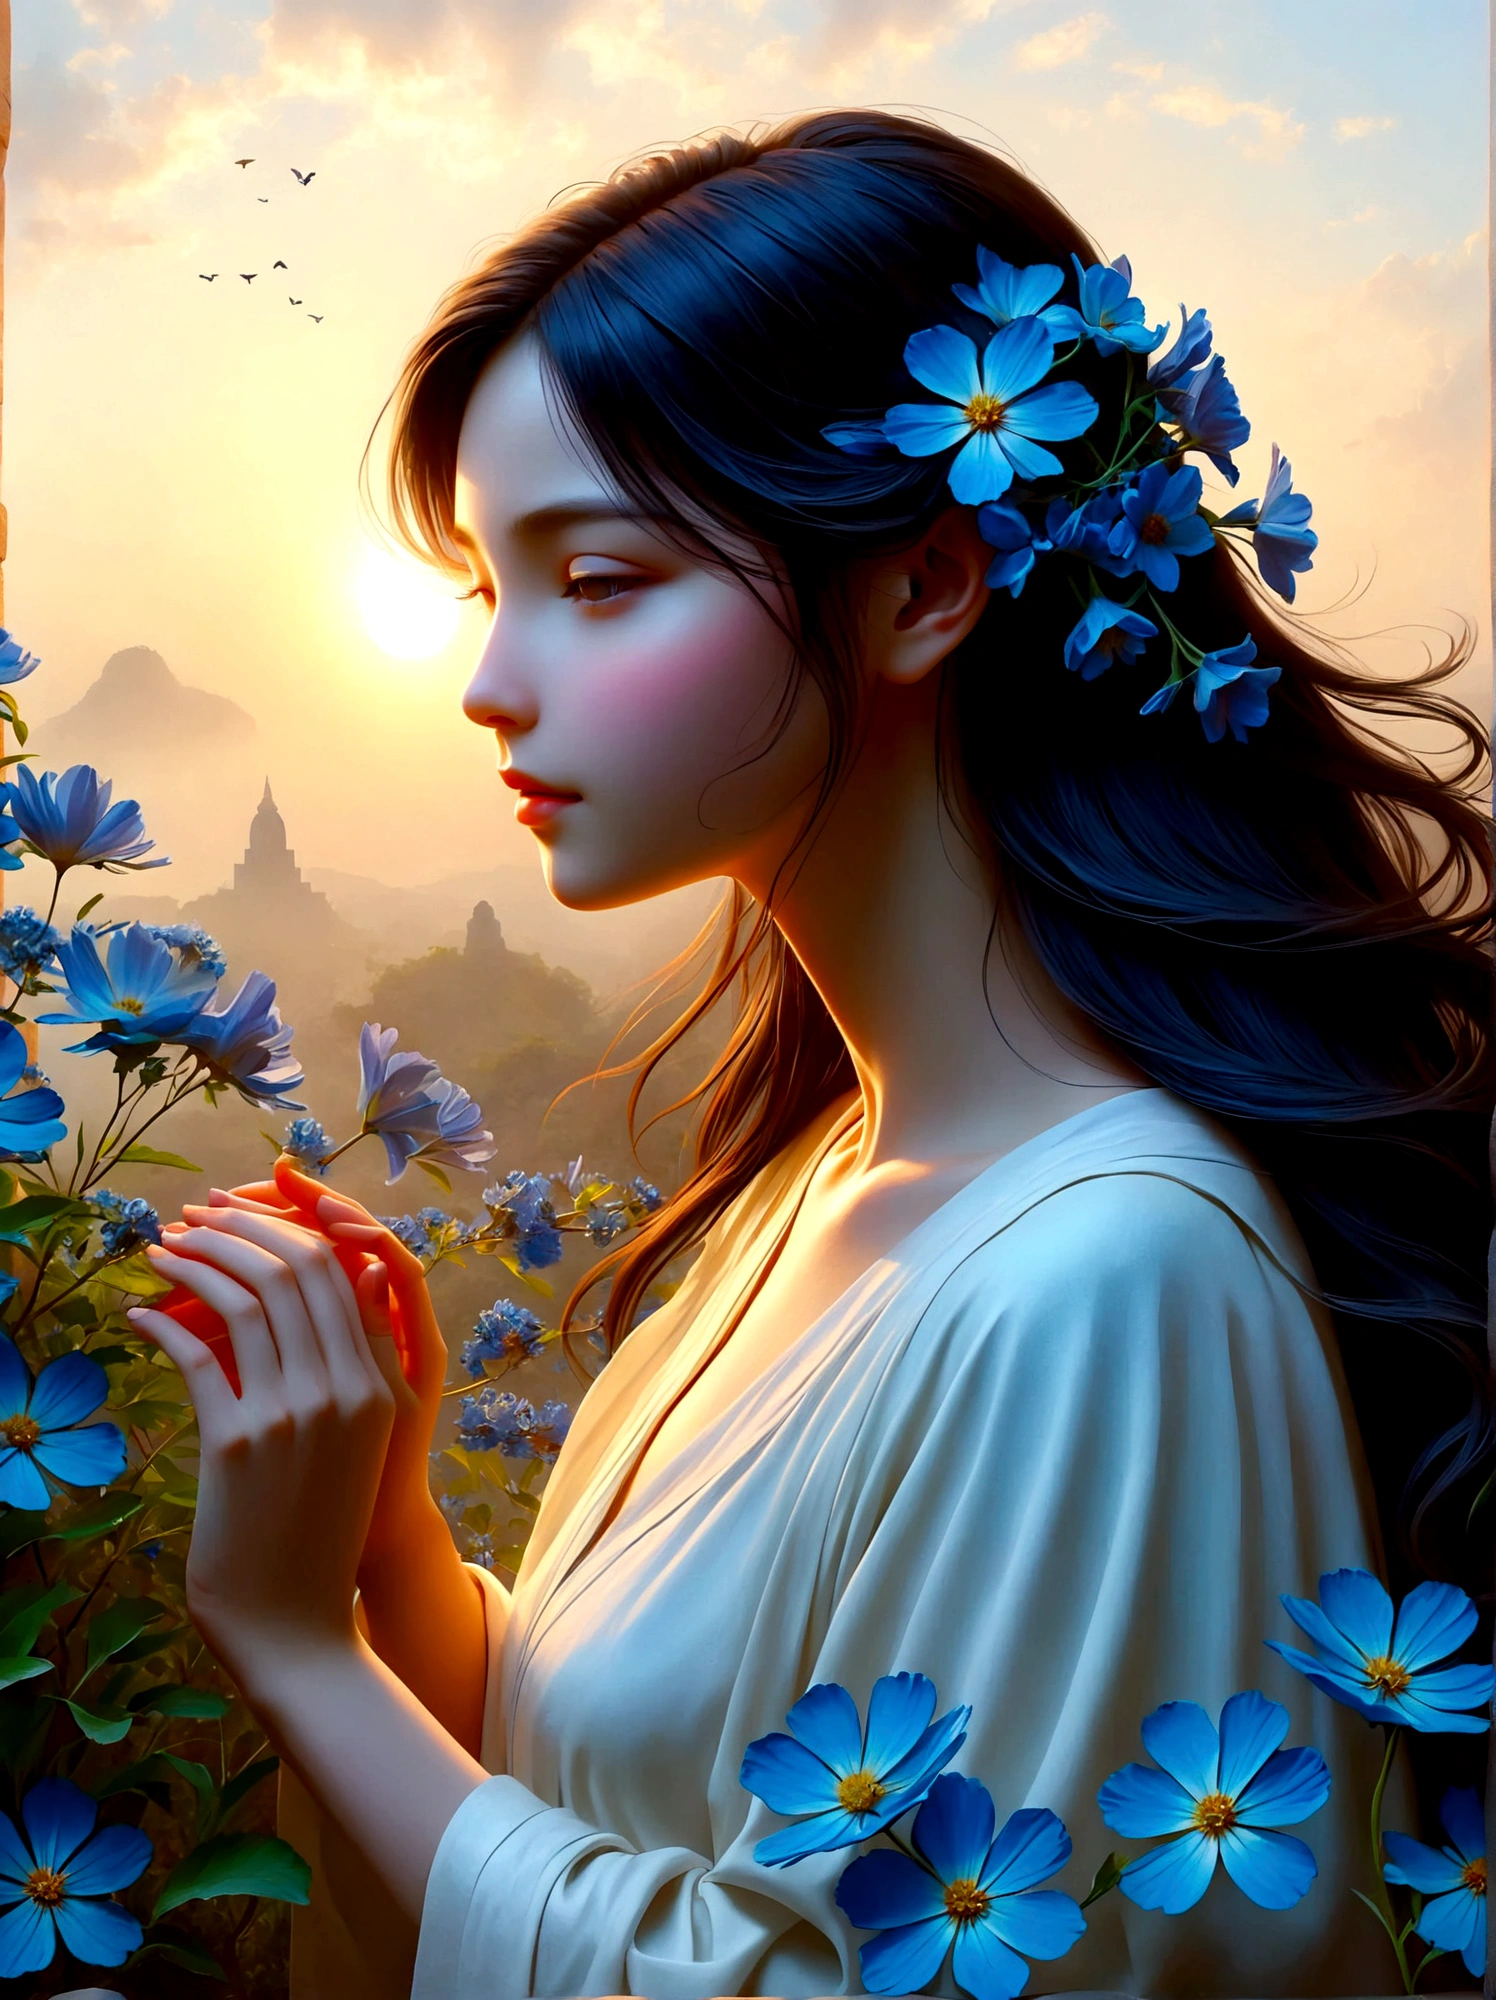 (새벽 일출 시간:1.6)，향기로운 정원에서, 눈 먼 소녀가 거기 서 있었어요，두 팔을 벌려, 그녀가 만난 꽃잎을 부드럽게 만져보세요, 자연과 달콤한 푸른 꽃과 연결, 개인은 광활한 하늘 아래 경외감과 놀라움으로 우뚝 서 있습니다., 그들의 실루엣은 생생한 아침 햇살과 극명한 대조를 이룹니다, 그들은 깊은 생각에 잠겨 있는 상태입니다, 주변의 고요한 분위기는 평온함과 고독을 말해줍니다., 관점은 자연 요소로 가득한 숨막히는 풍경의 광대한 범위를 강조하는 광각 뷰입니다., 이미지는 빛과 그림자를 효과적으로 사용하여 드라마틱하고 웅장한 느낌을 불러일으켜야 합니다..